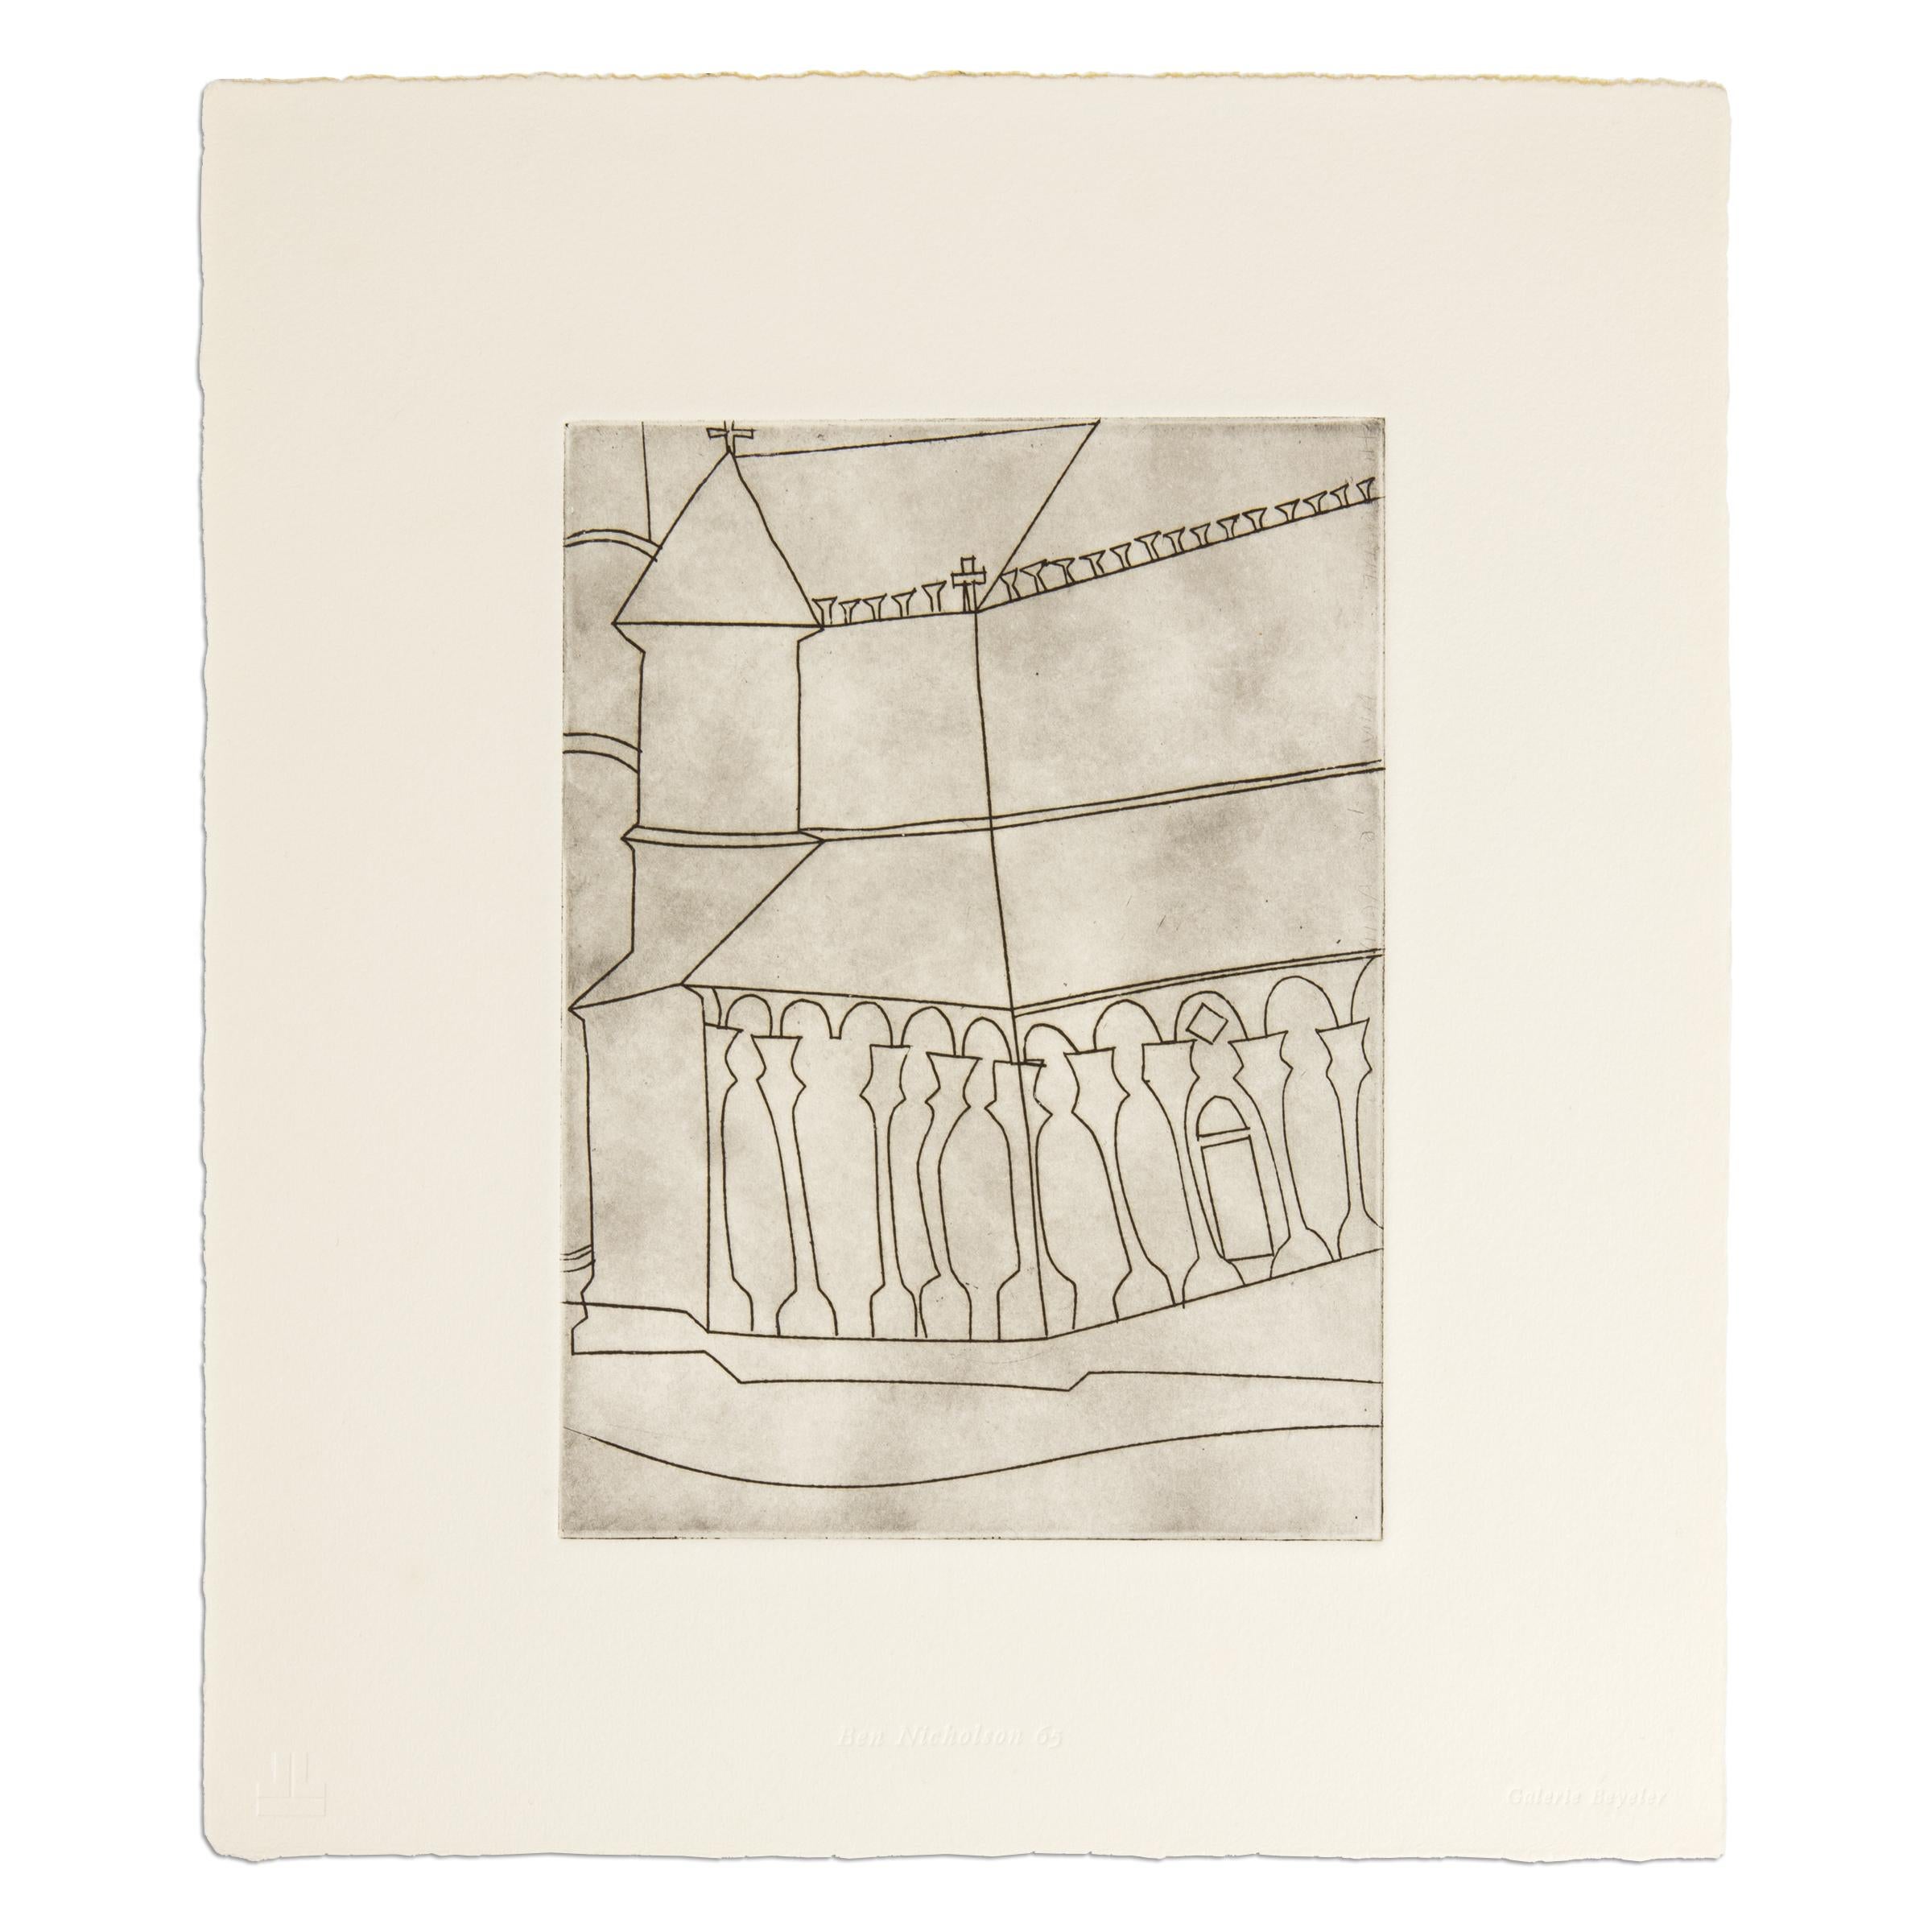 Ben Nicholson (britannique, 1894-1982)
Fragment de cathédrale toscane, 1966
Support : Gravure sur papier BFK Rives (en vrac dans la pochette originale de justification en papier)
Dimensions : 12 4/5 × 10 3/5 in (32,5 × 27 cm)
Édition de 380